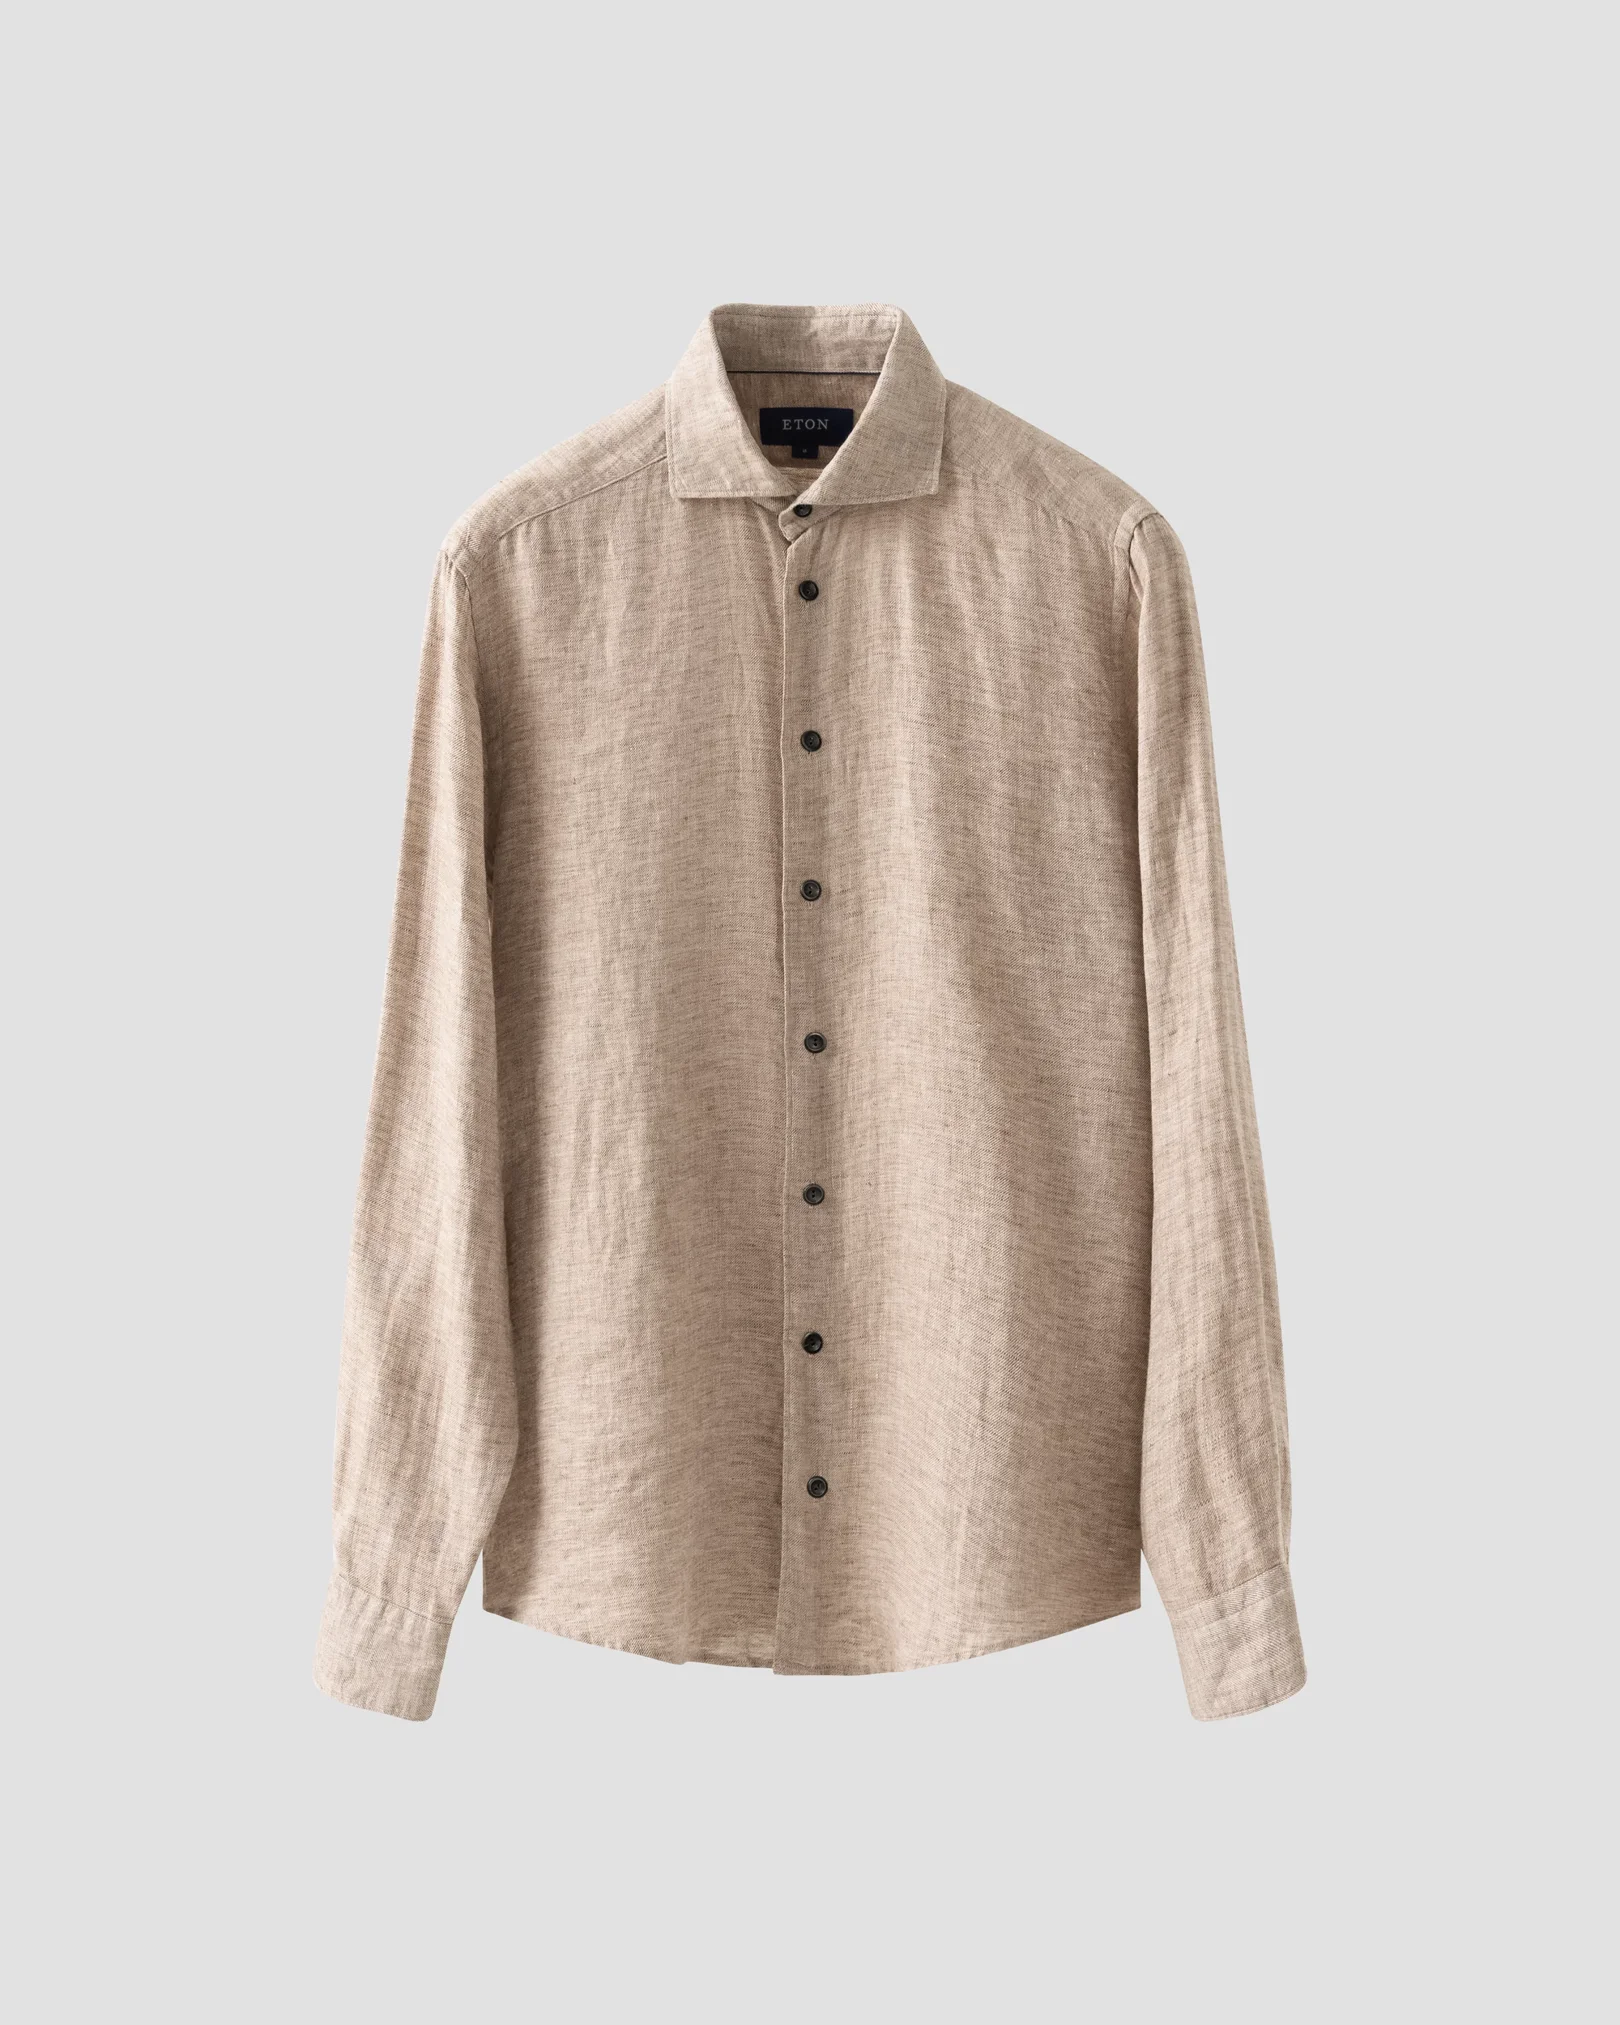 Eton - Light Brown Linen Twill Shirt